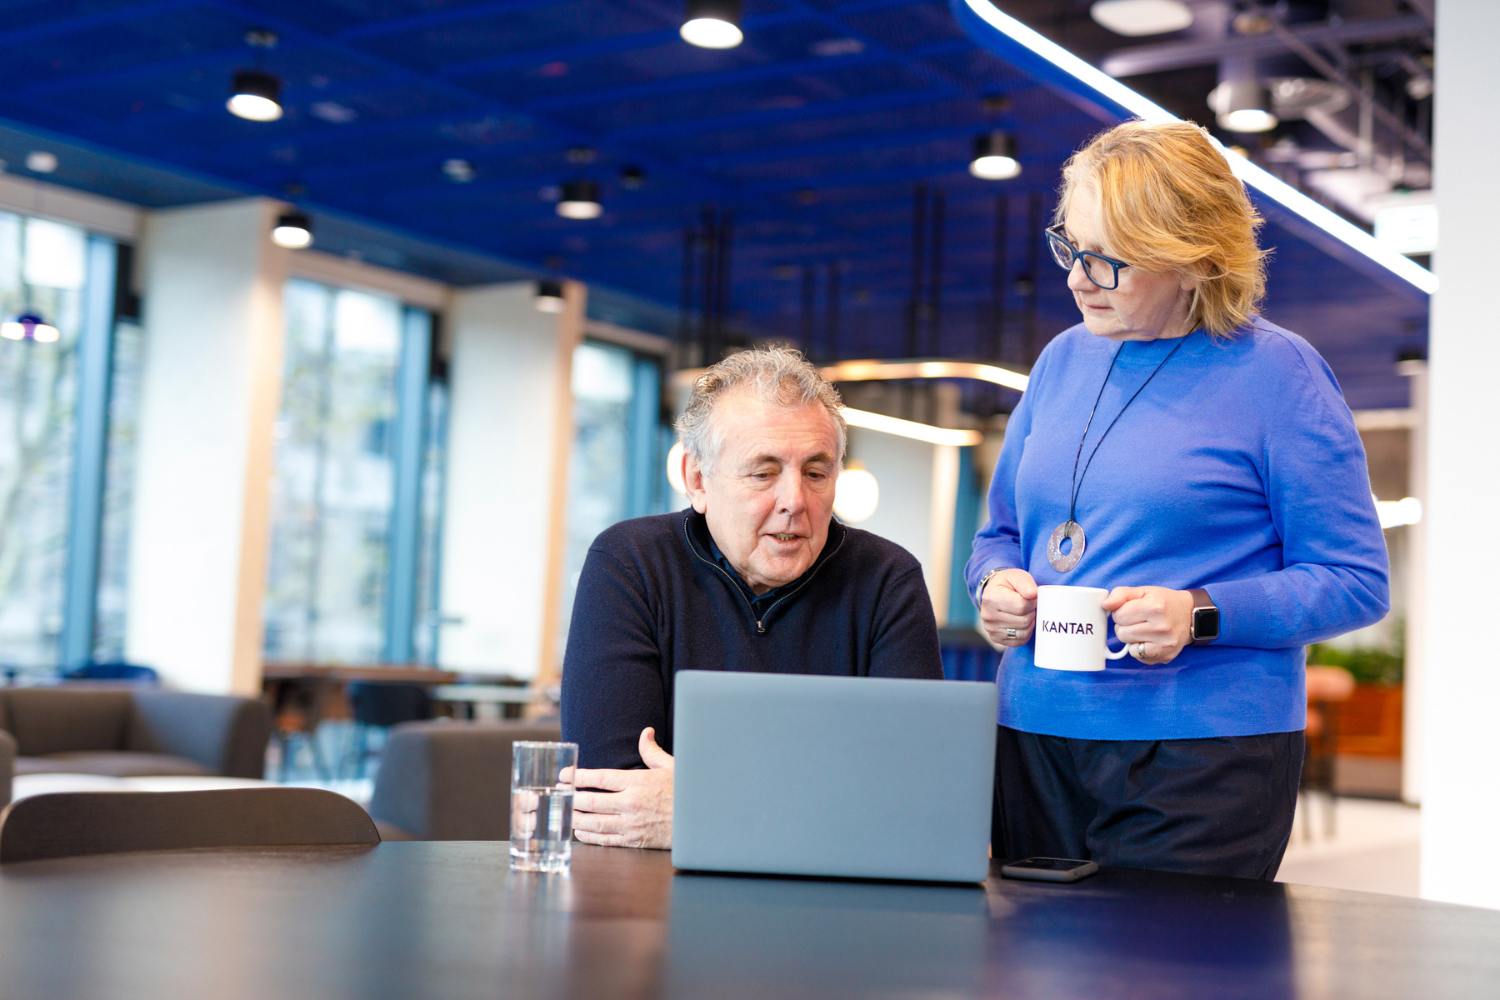 Una mujer con un jersey azul está de pie y sostiene un café. En la mesa, hay un hombre con jersey negro y los brazos cruzados, mirando un ordenador portátil.  